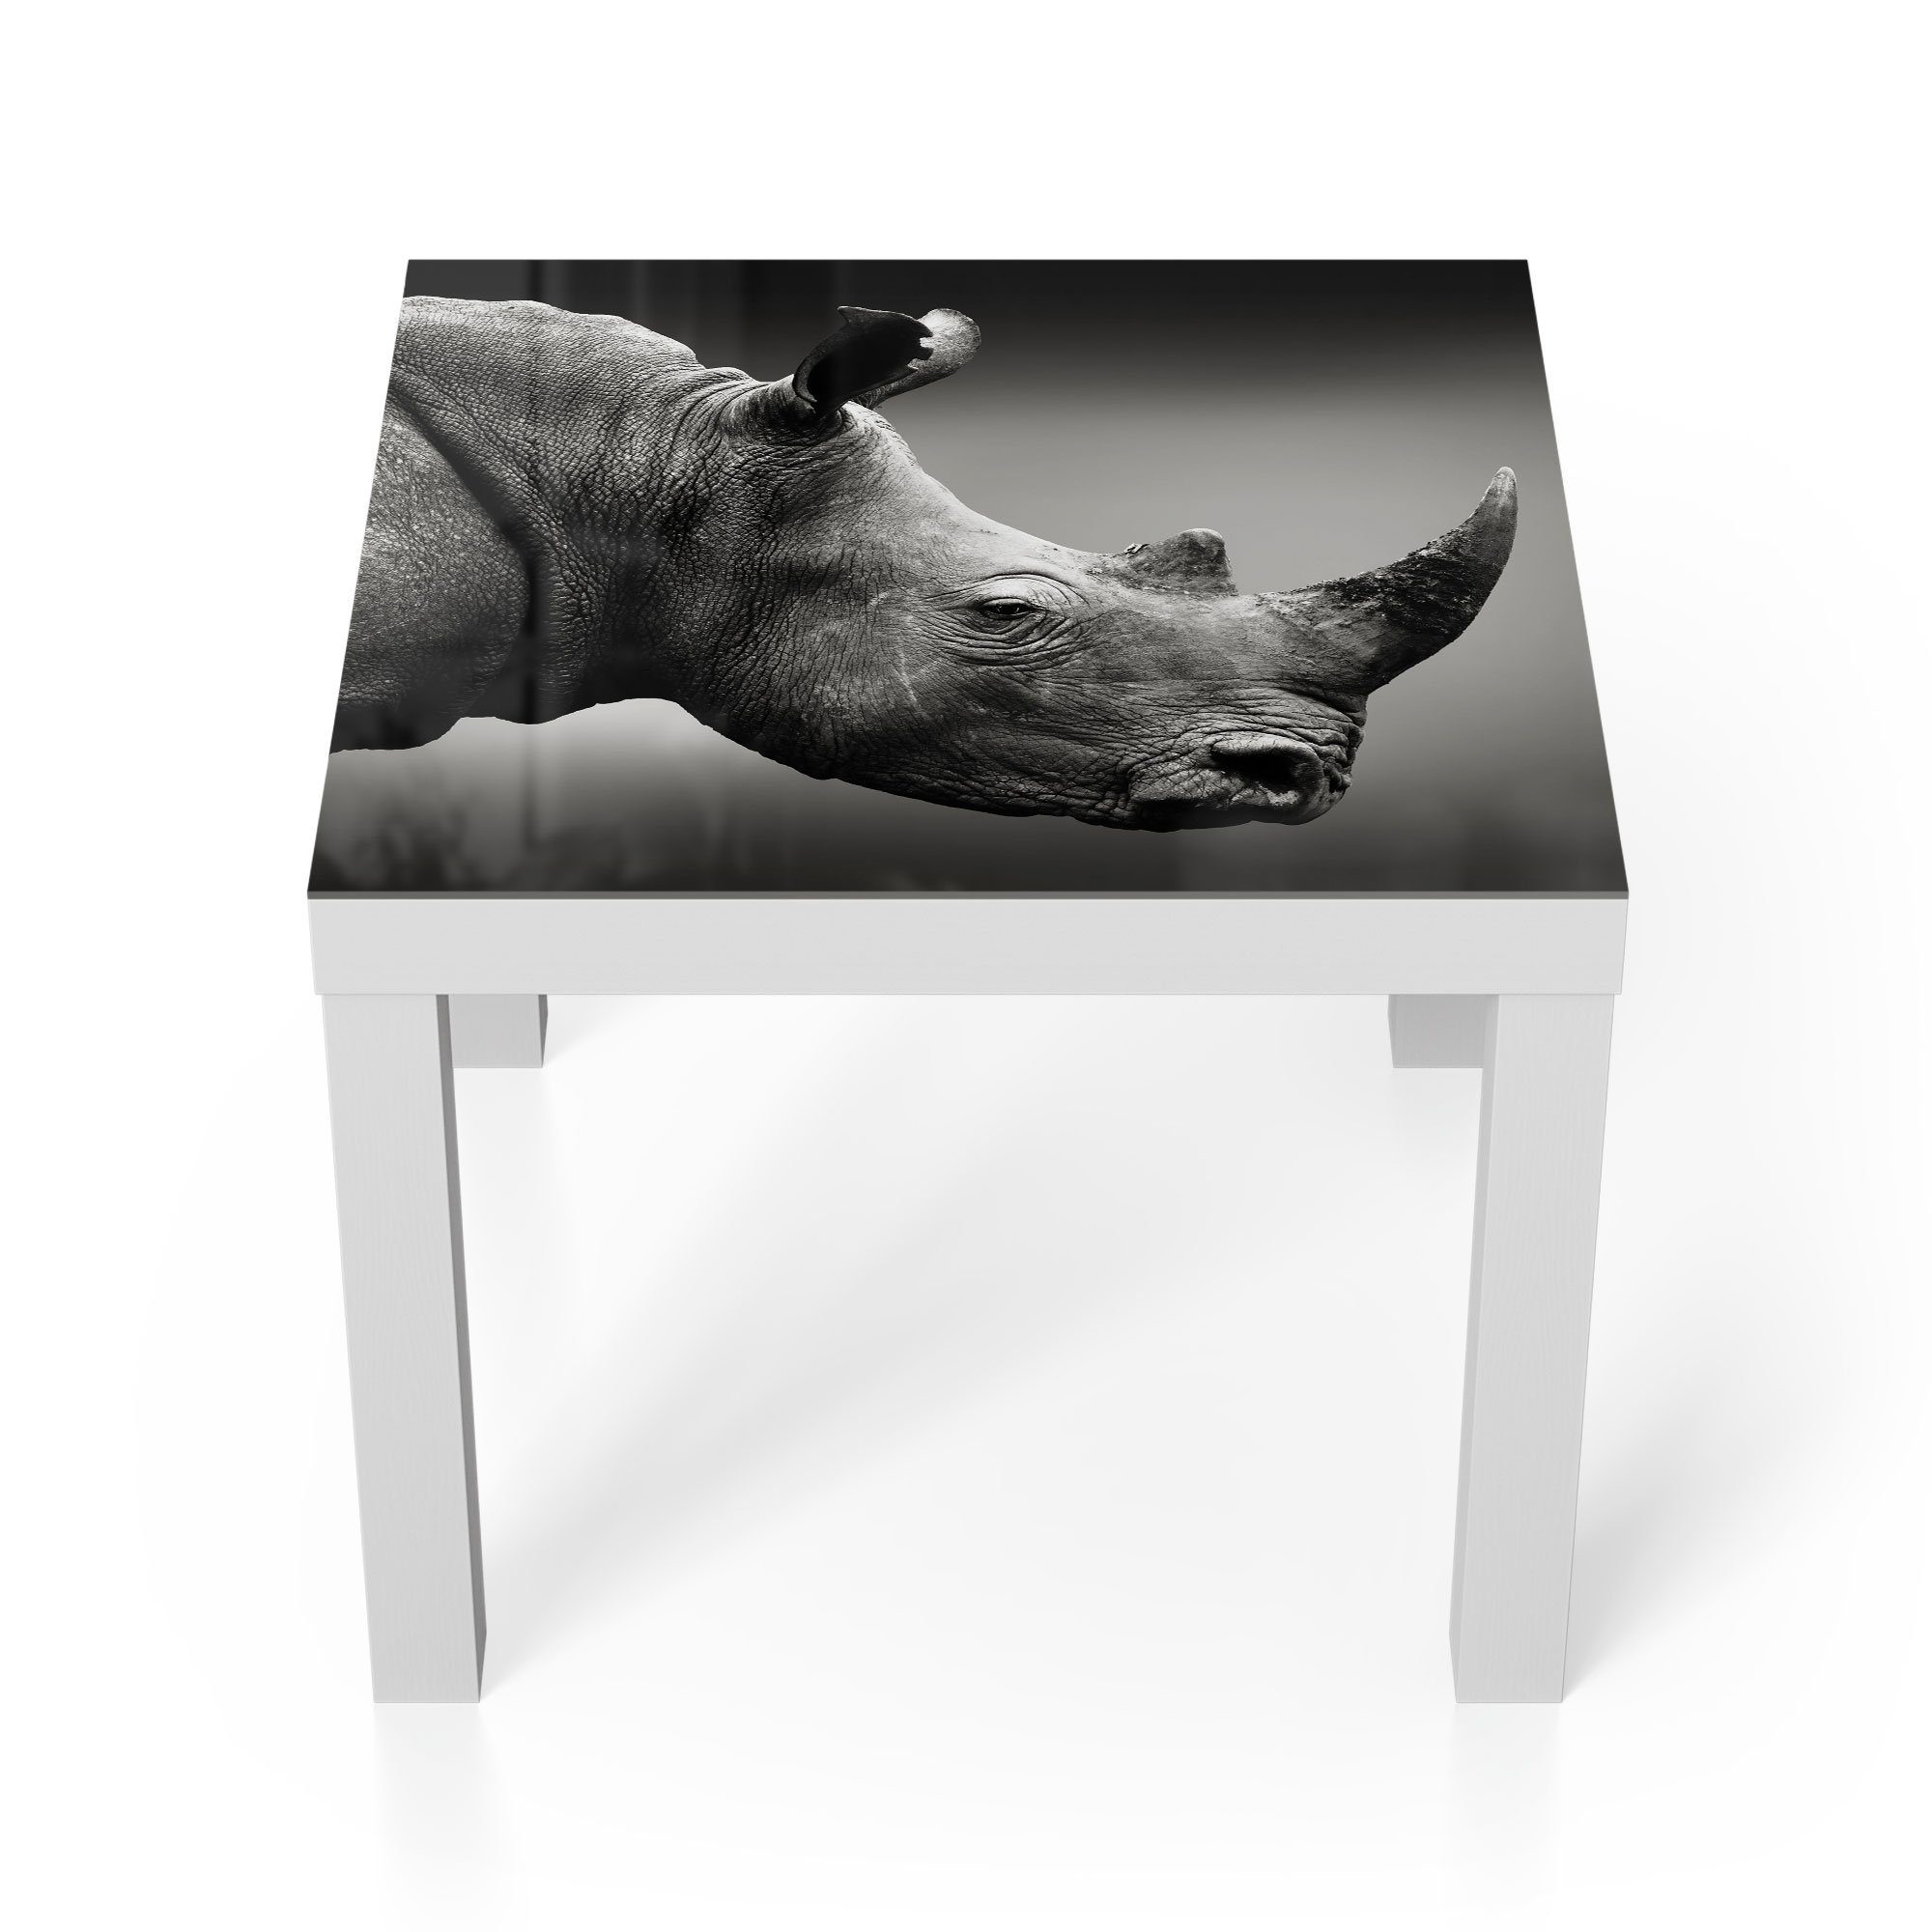 DEQORI Couchtisch 'Nashorn im Profil', Glas Beistelltisch Glastisch modern Weiß